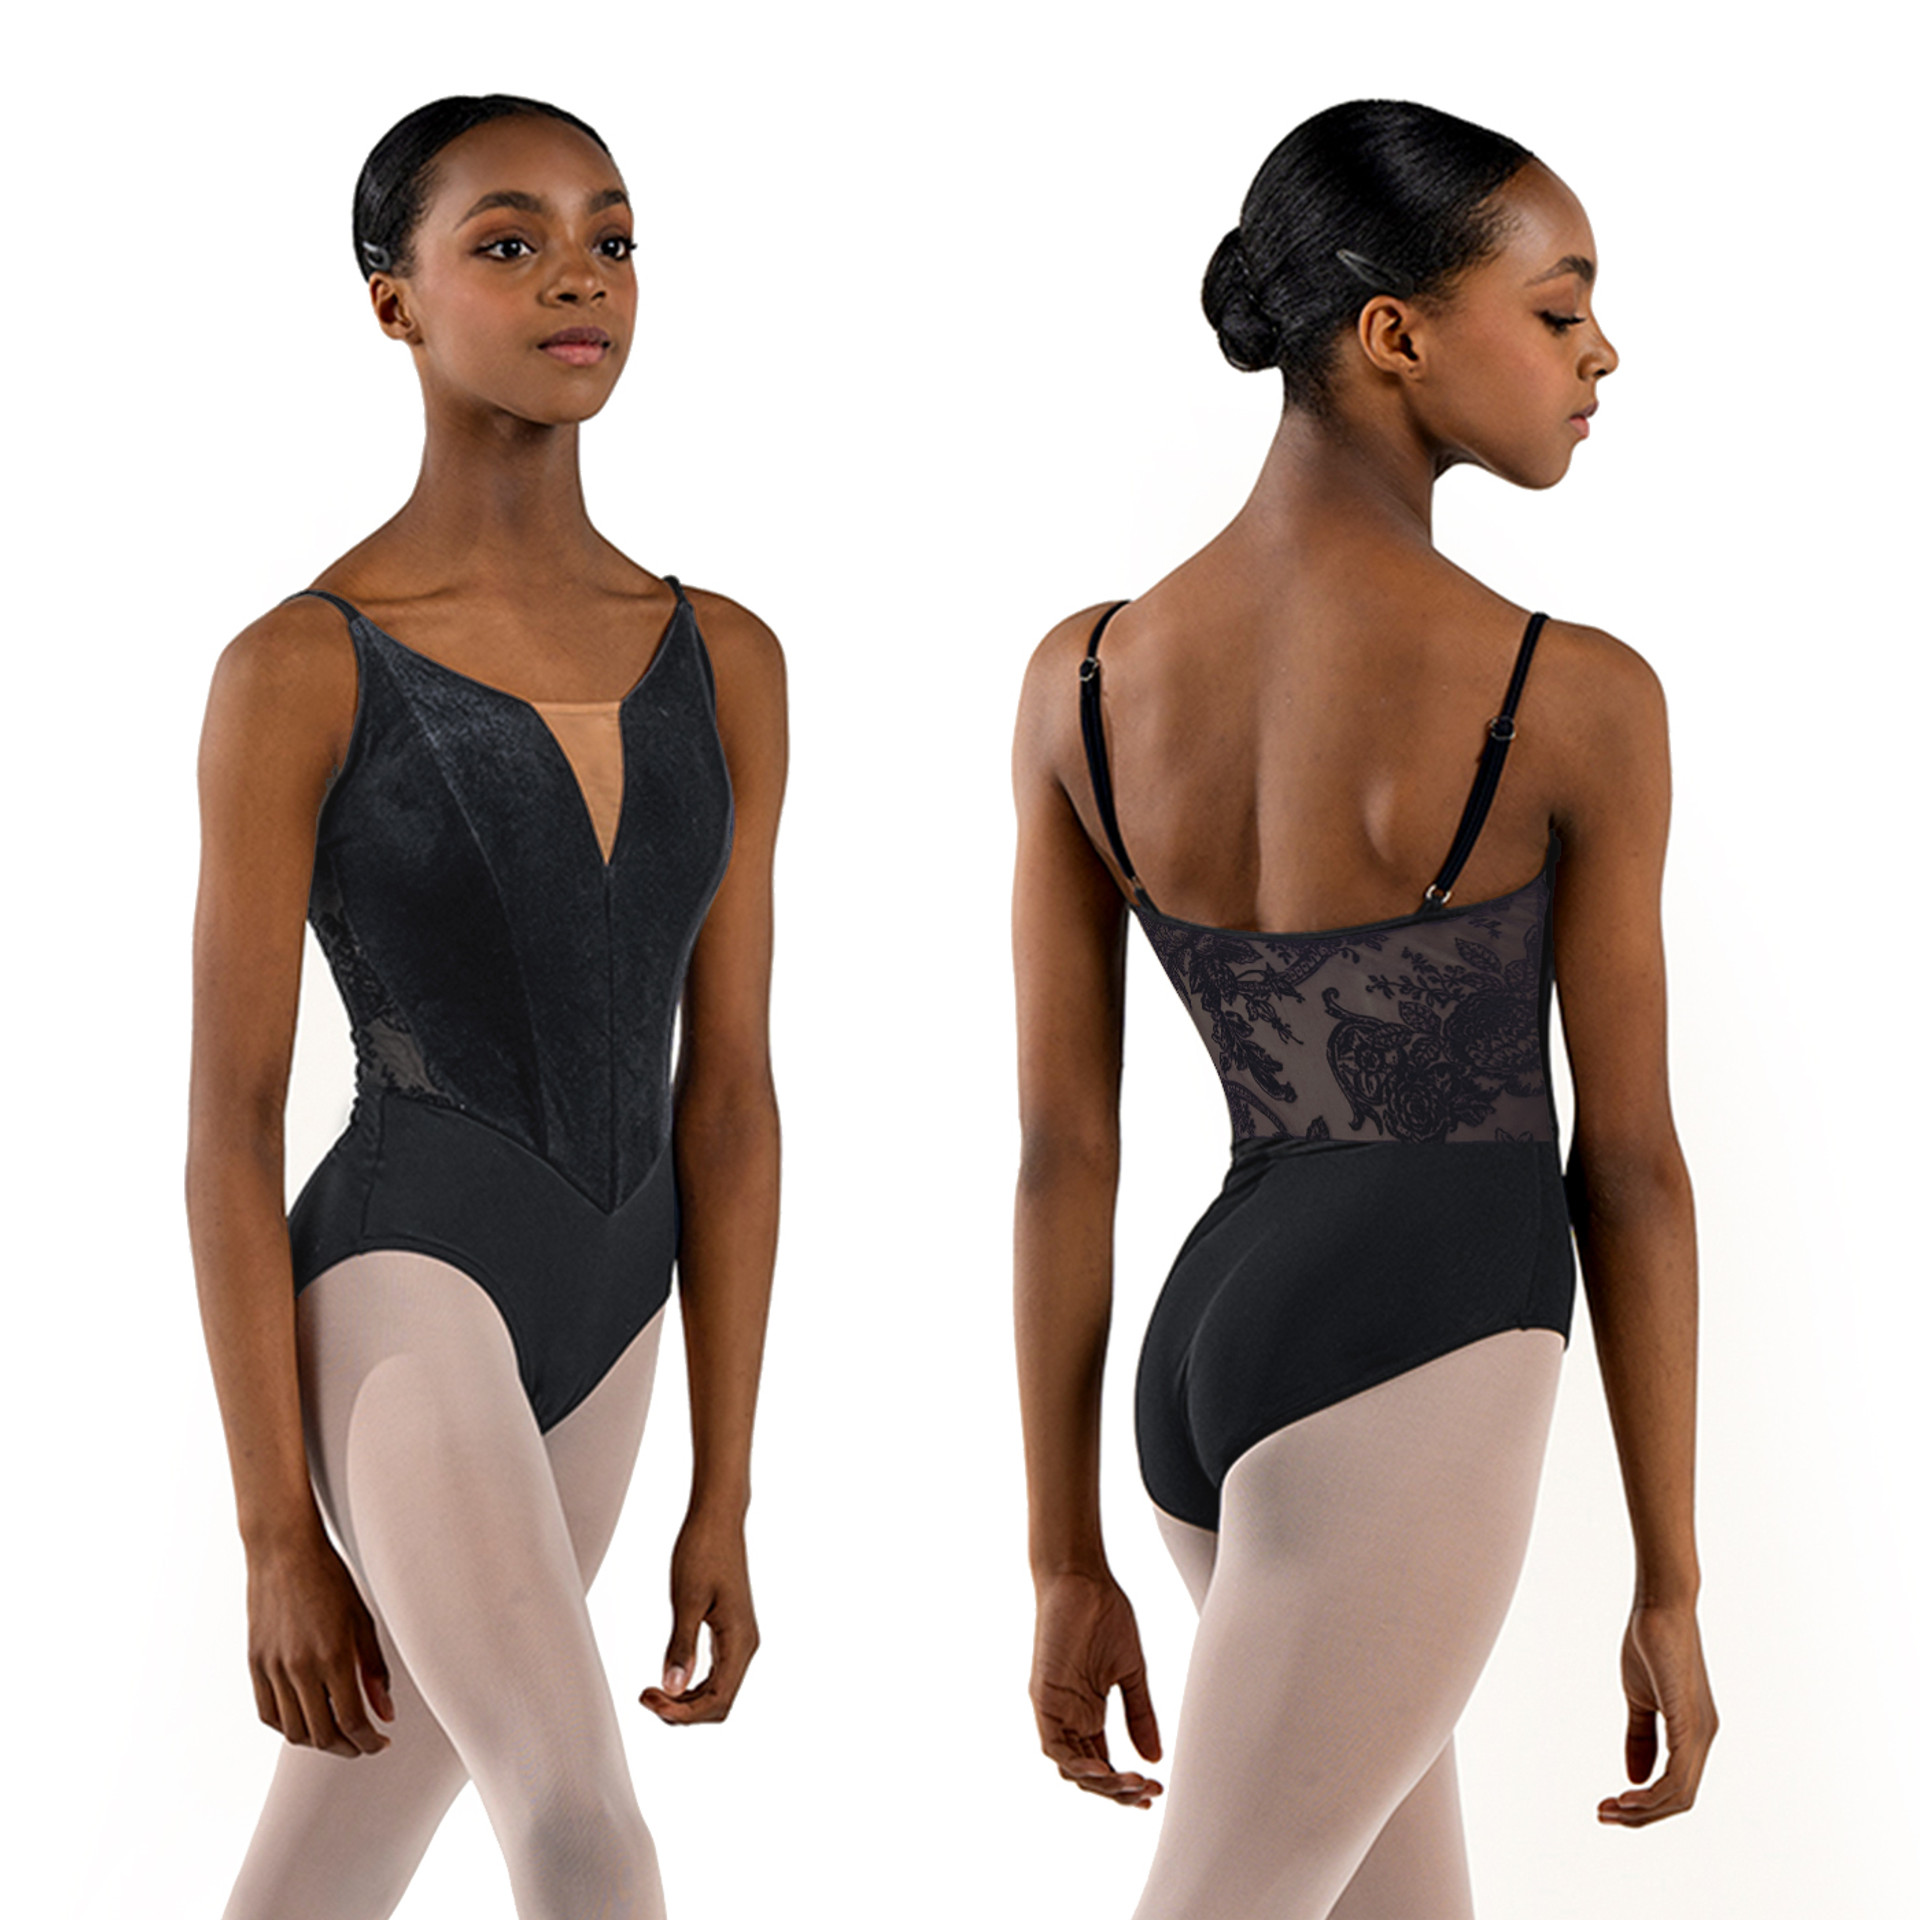 BH365U Double-Sided Sticky Strips - Lindens Dancewear